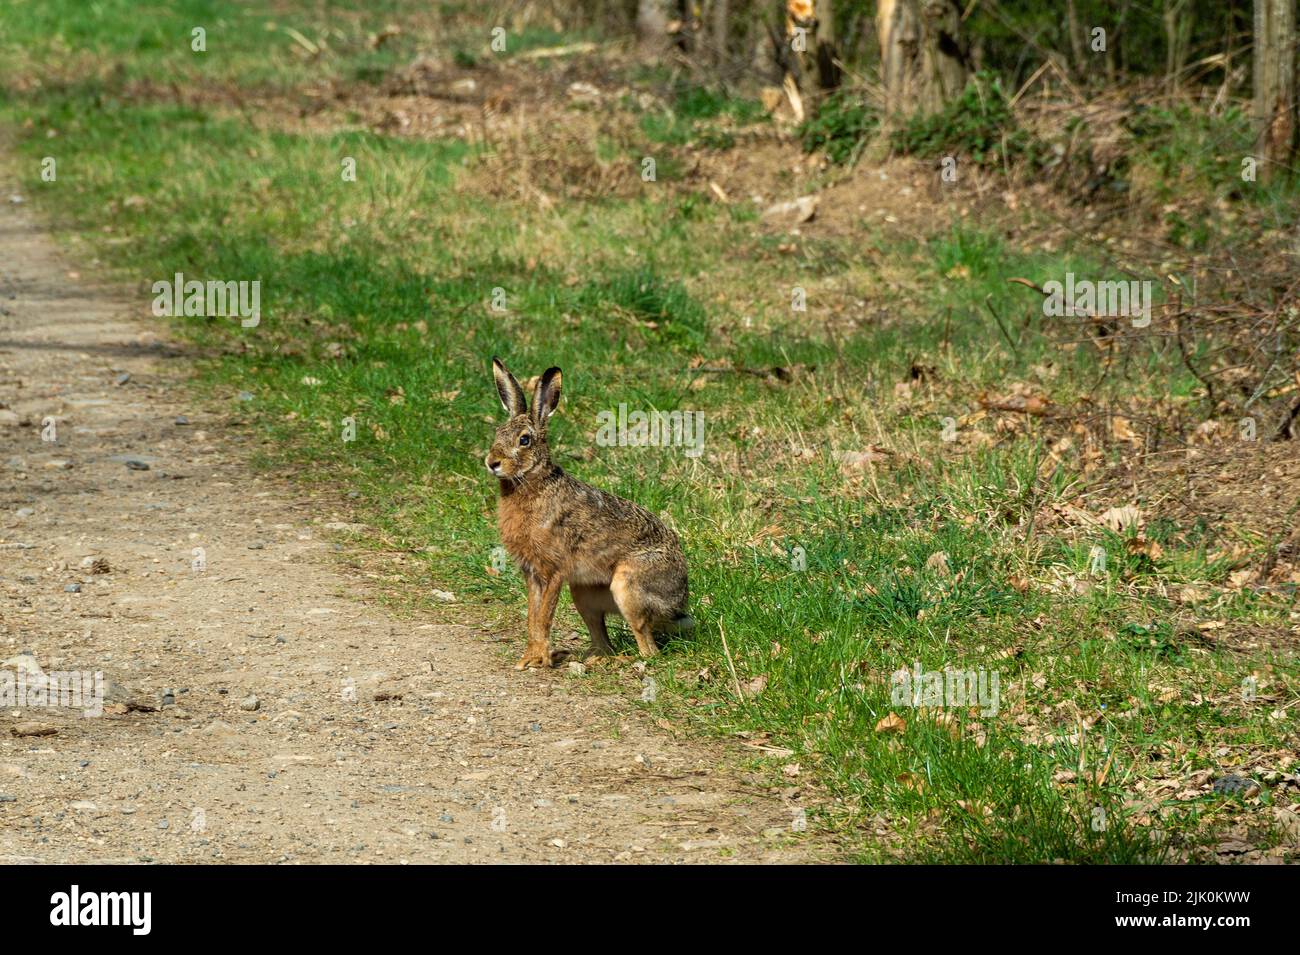 : Conejo lindo marrón en un camino durante el día Foto de stock